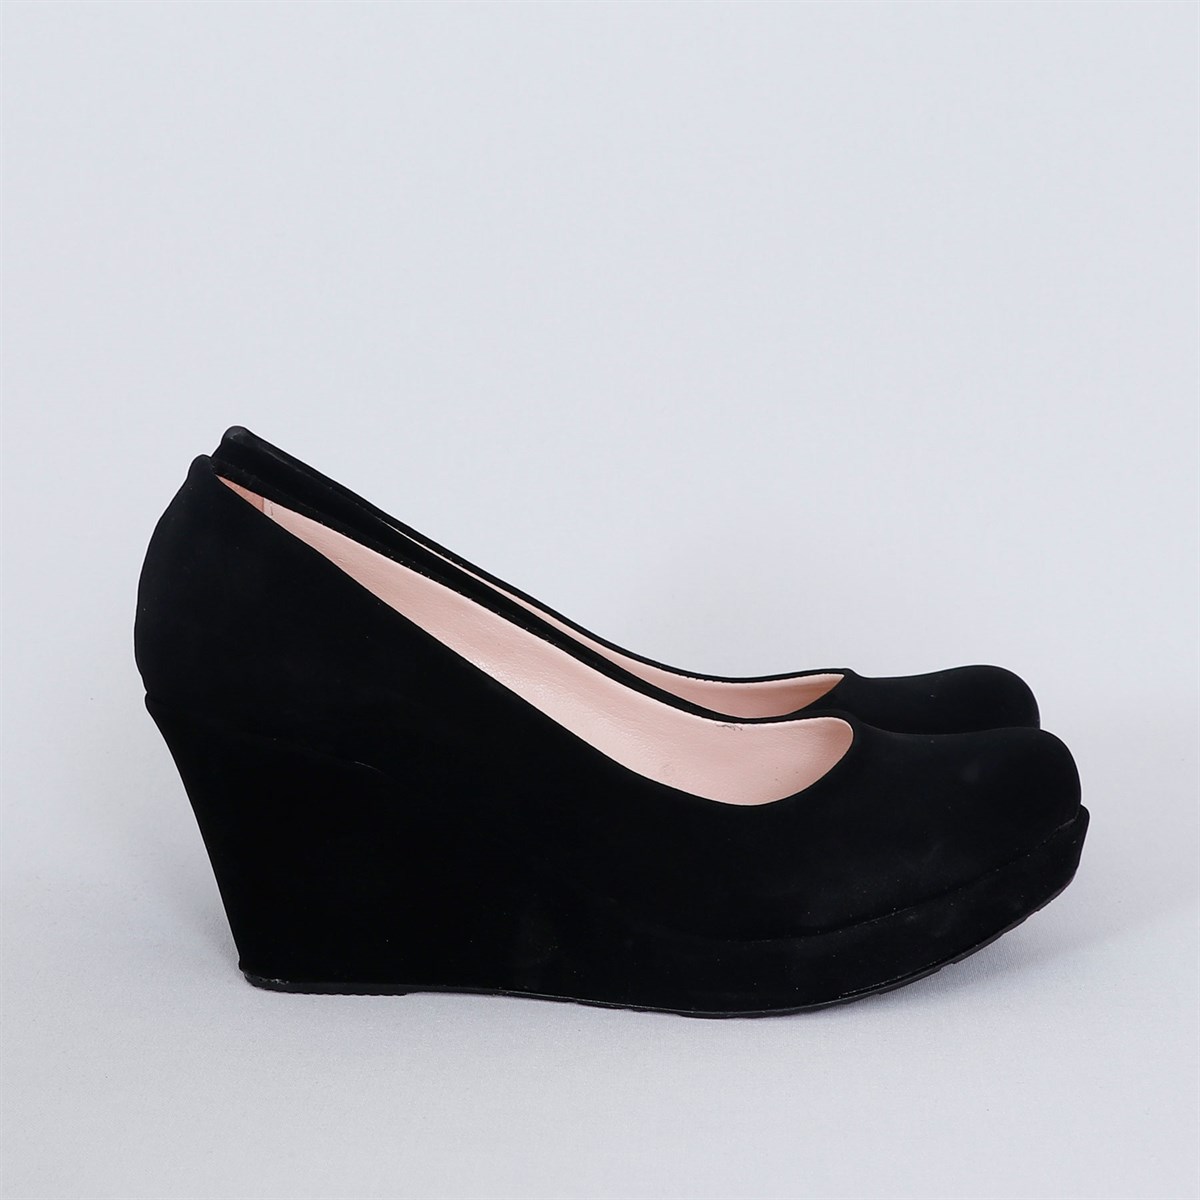 Siyah süet Dolgu Topuk Kadın Ayakkabı 706 DTKY Fiyatı ve Modelleri